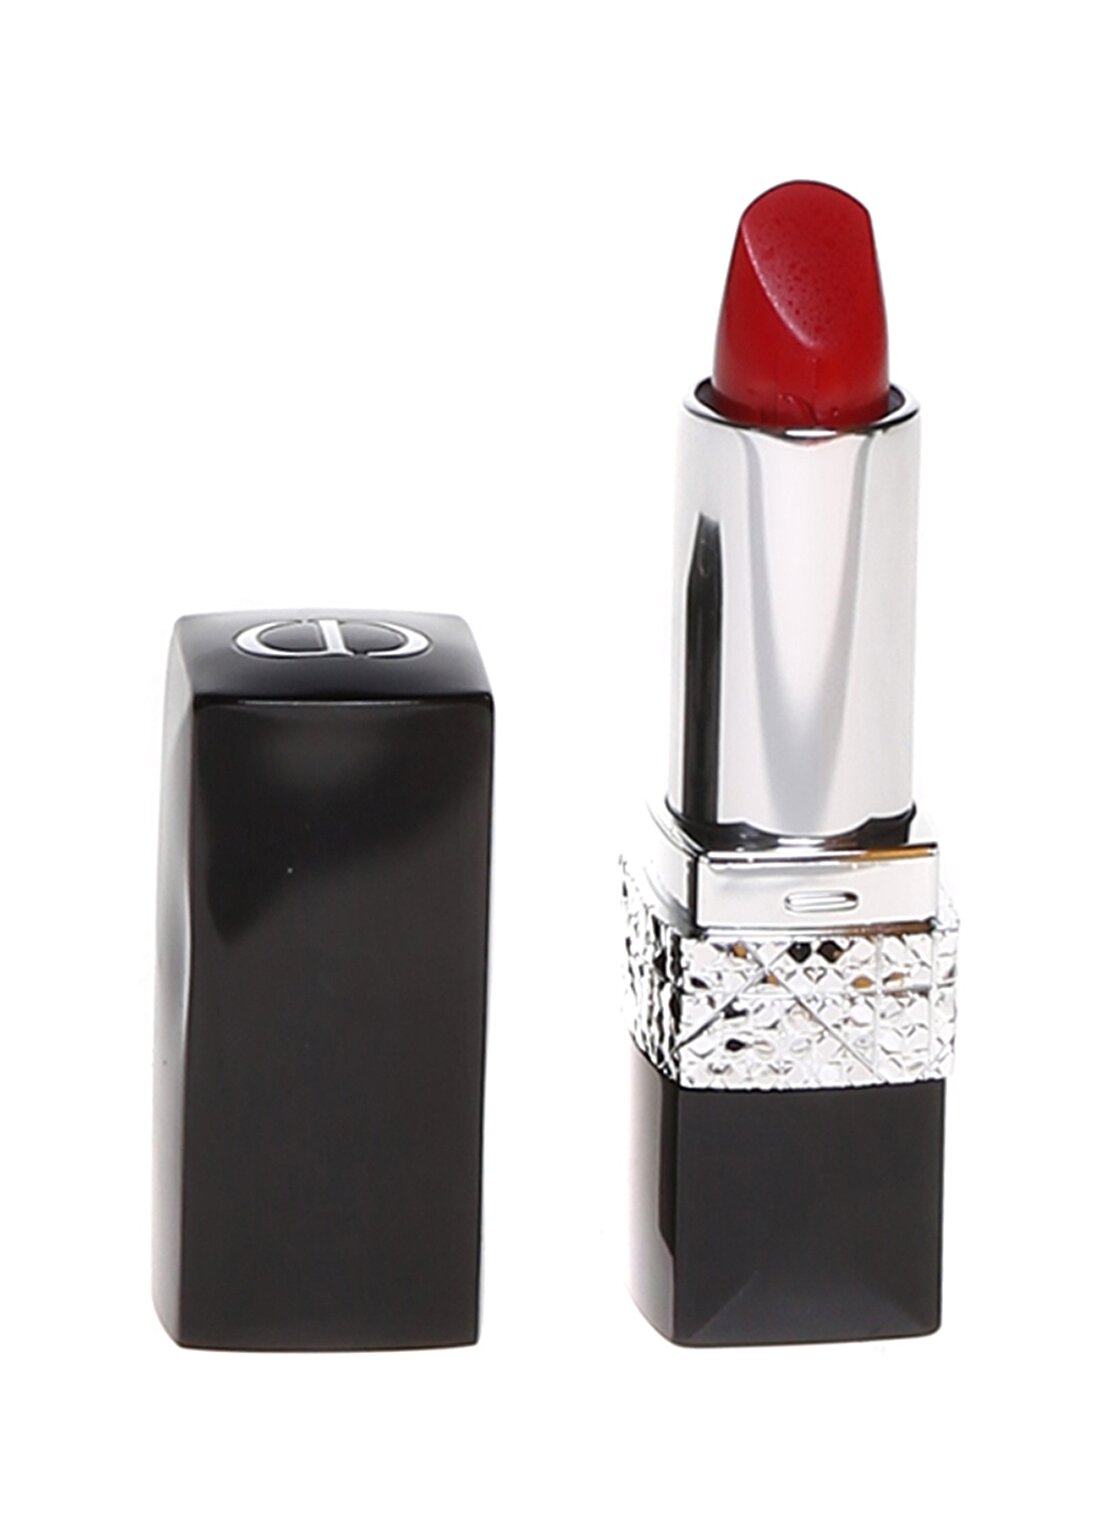 Dior Red Lipstick Rouge Precious Rocks Lipstick 999 Matte Ruj